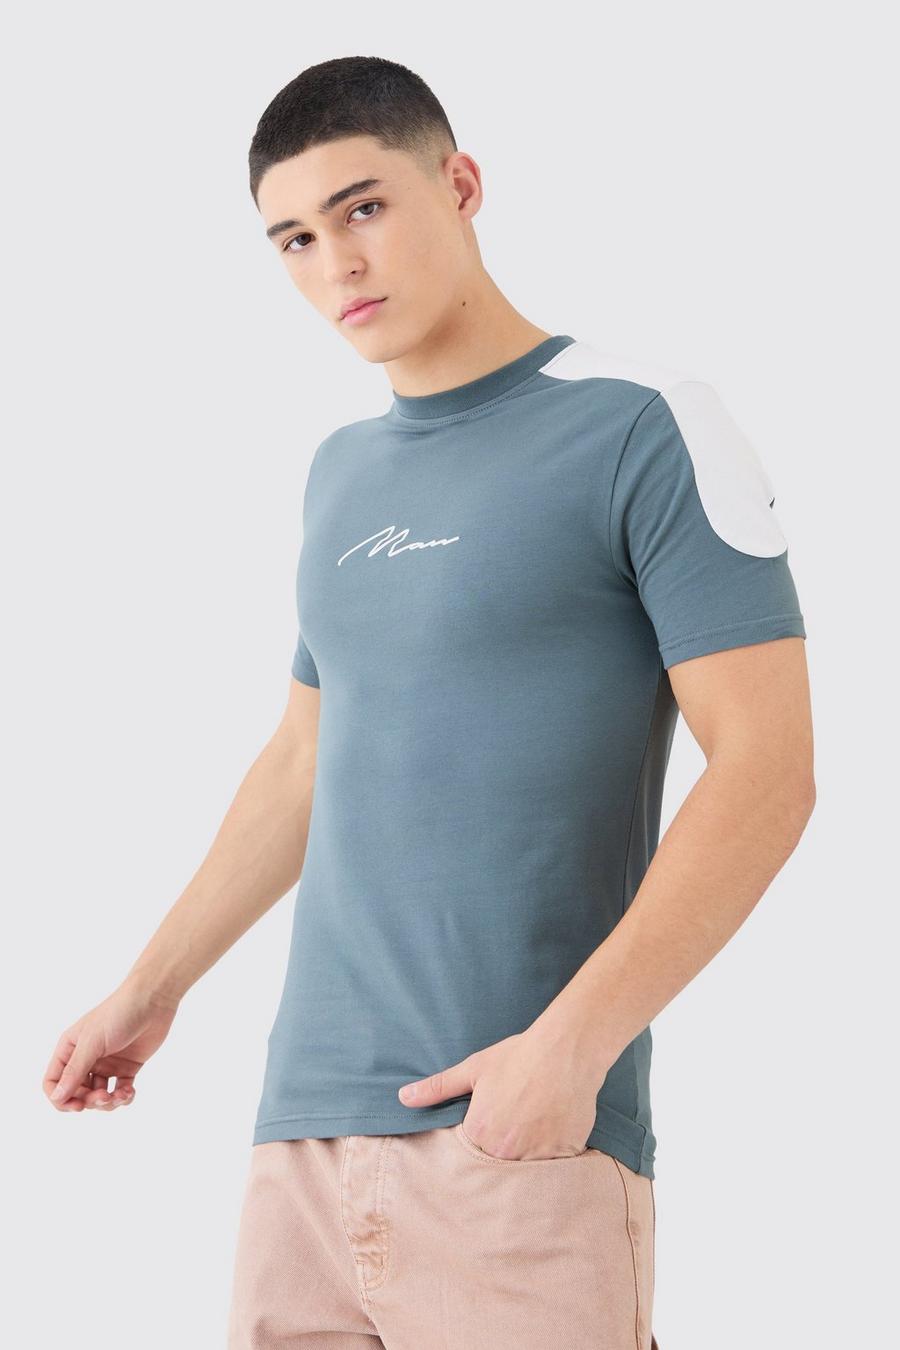 Camiseta MAN ajustada al músculo con colores en bloque, Slate blue azzurro